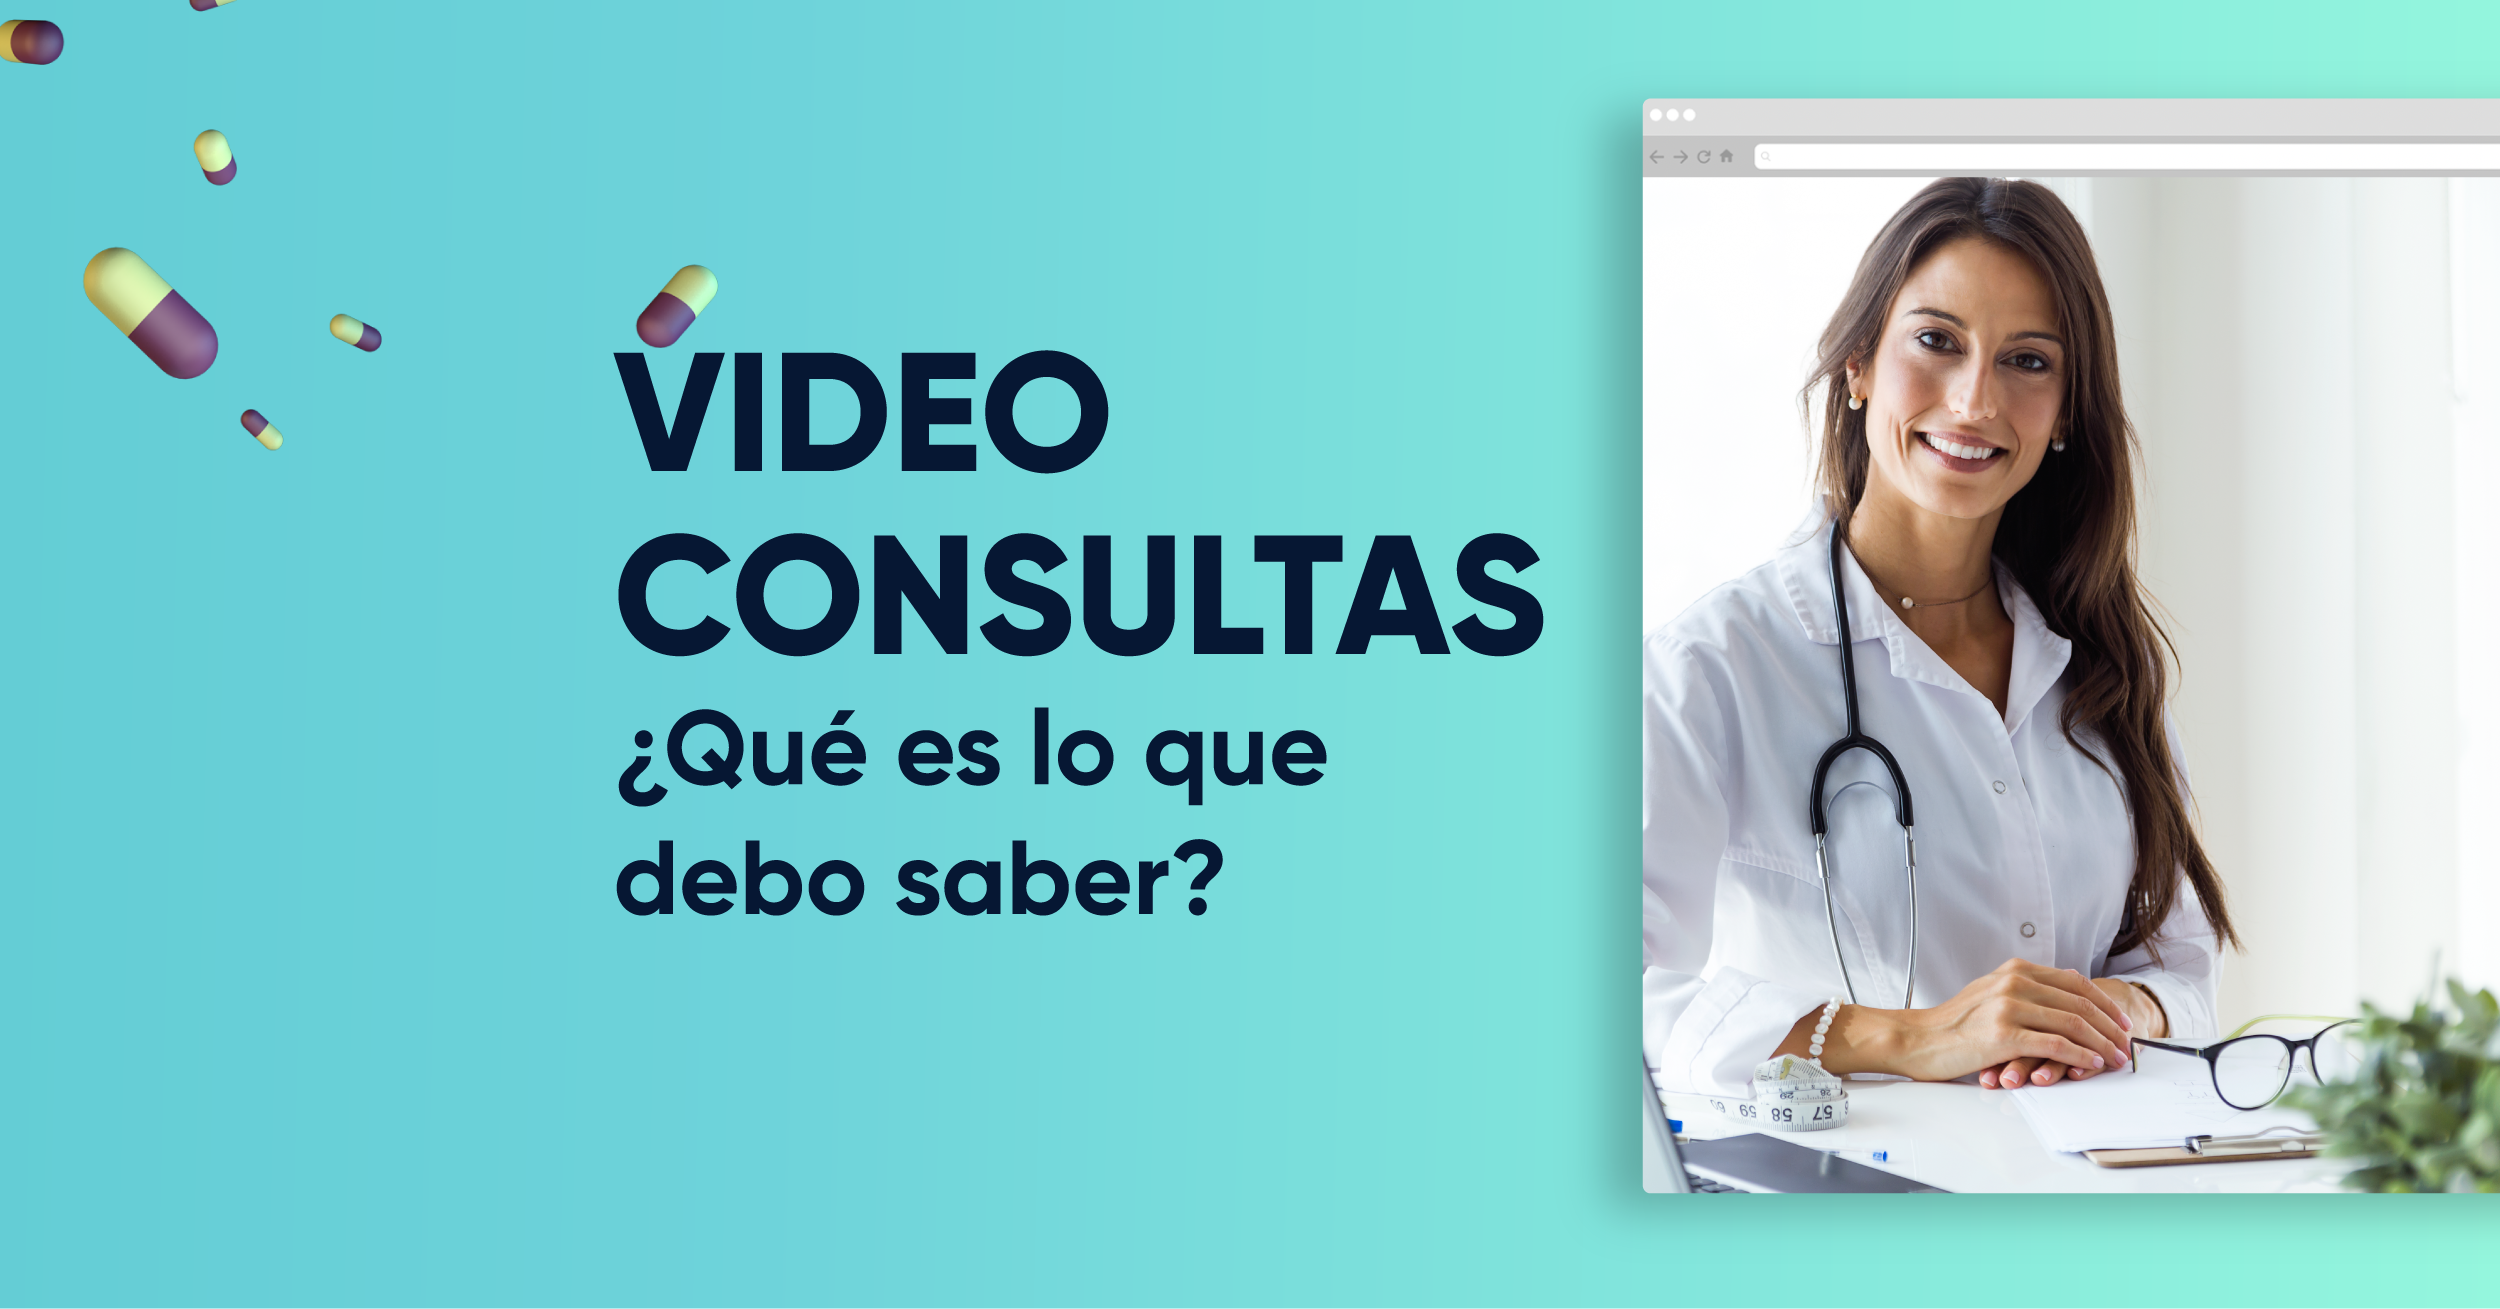 Conozca cómo aprovechar las videoconsultas en su negocio médico